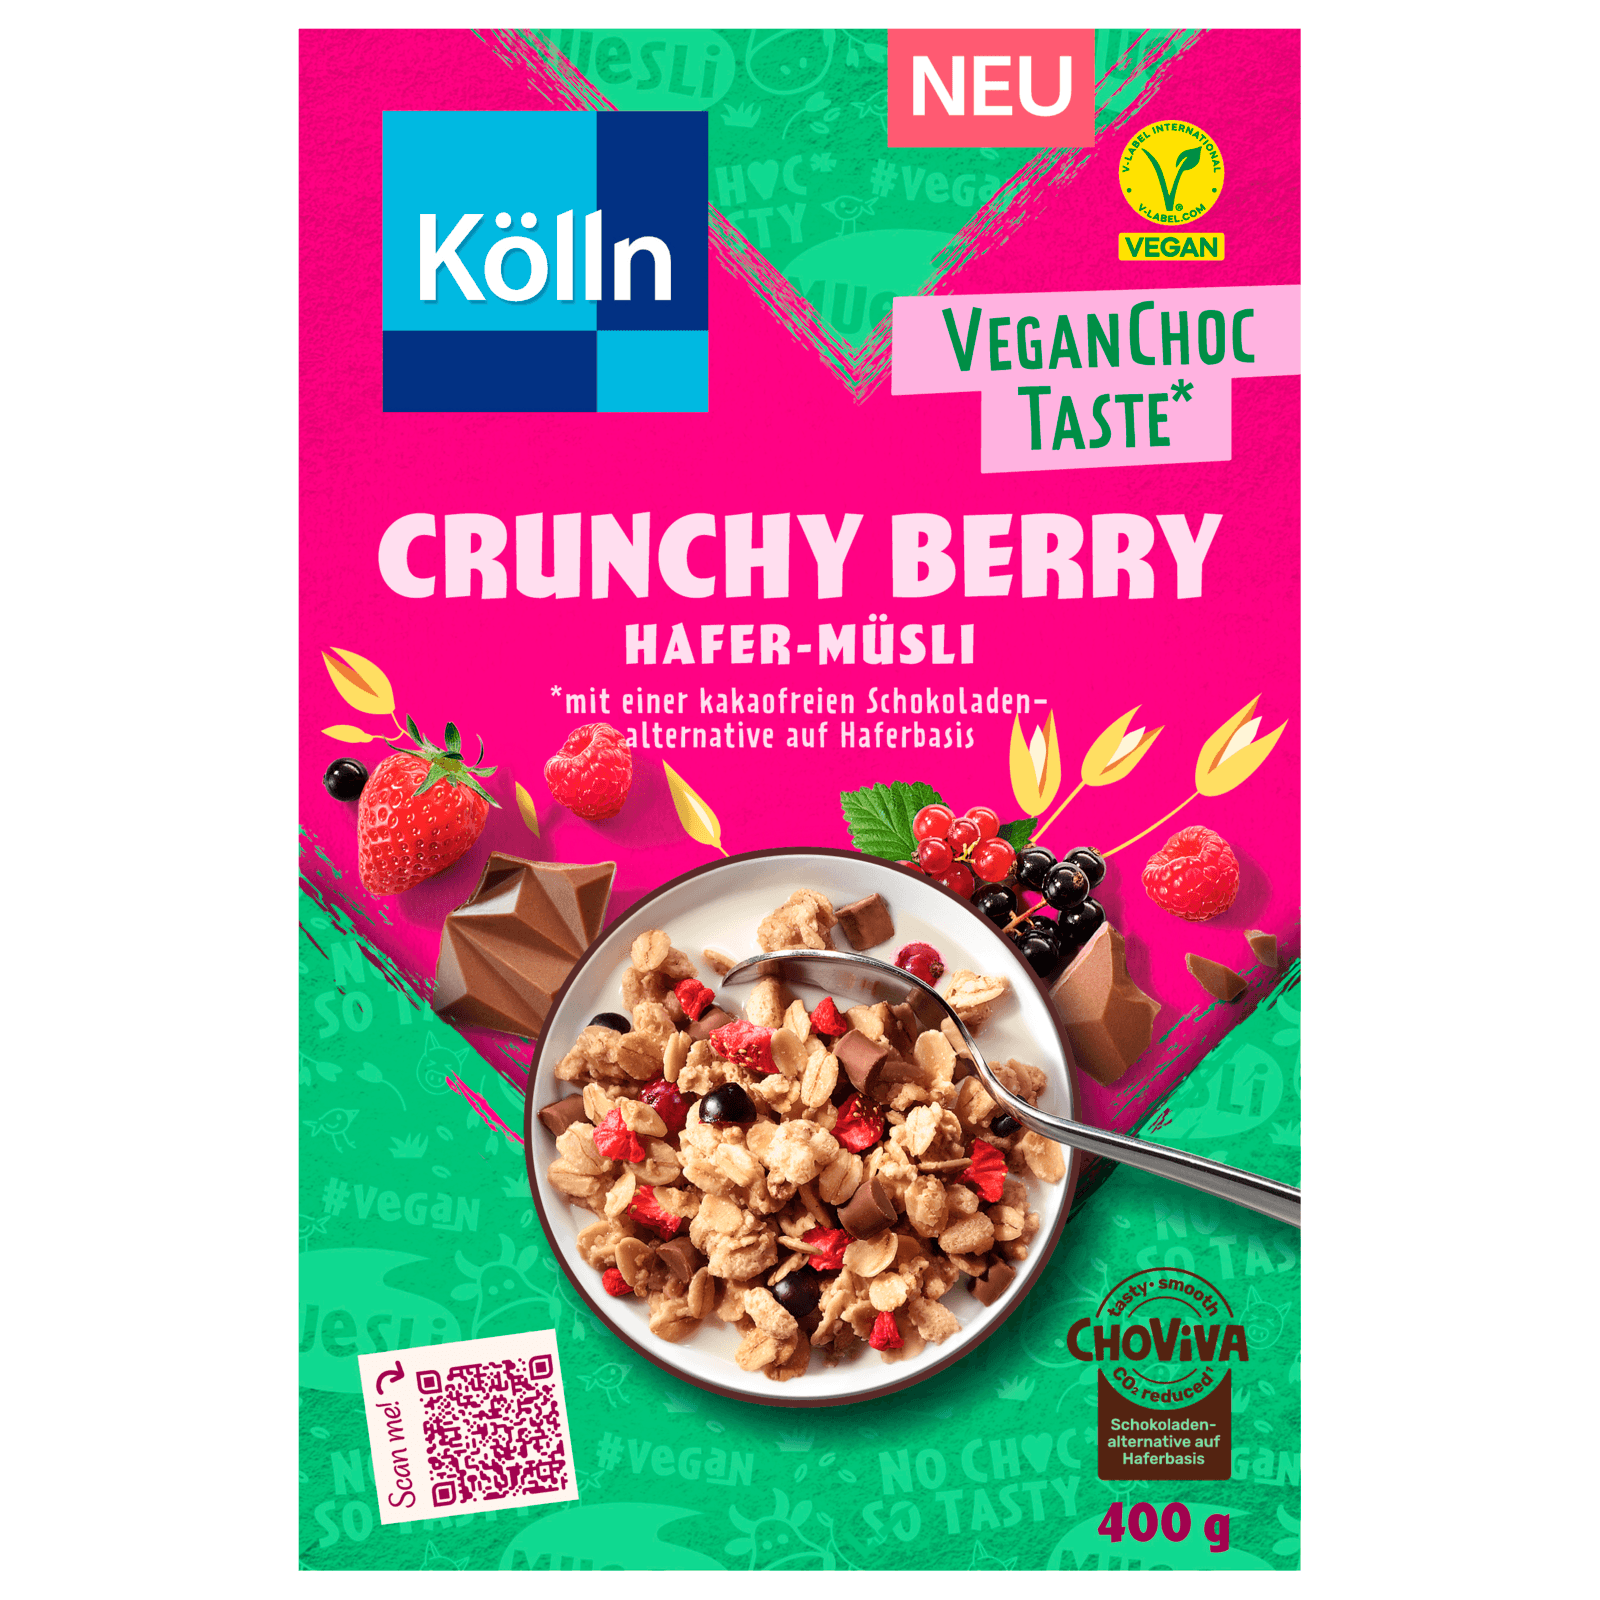 Kölln Crunchy online bei vegan Berry bestellen! VeganChocTaste Hafer-Müsli REWE 400g